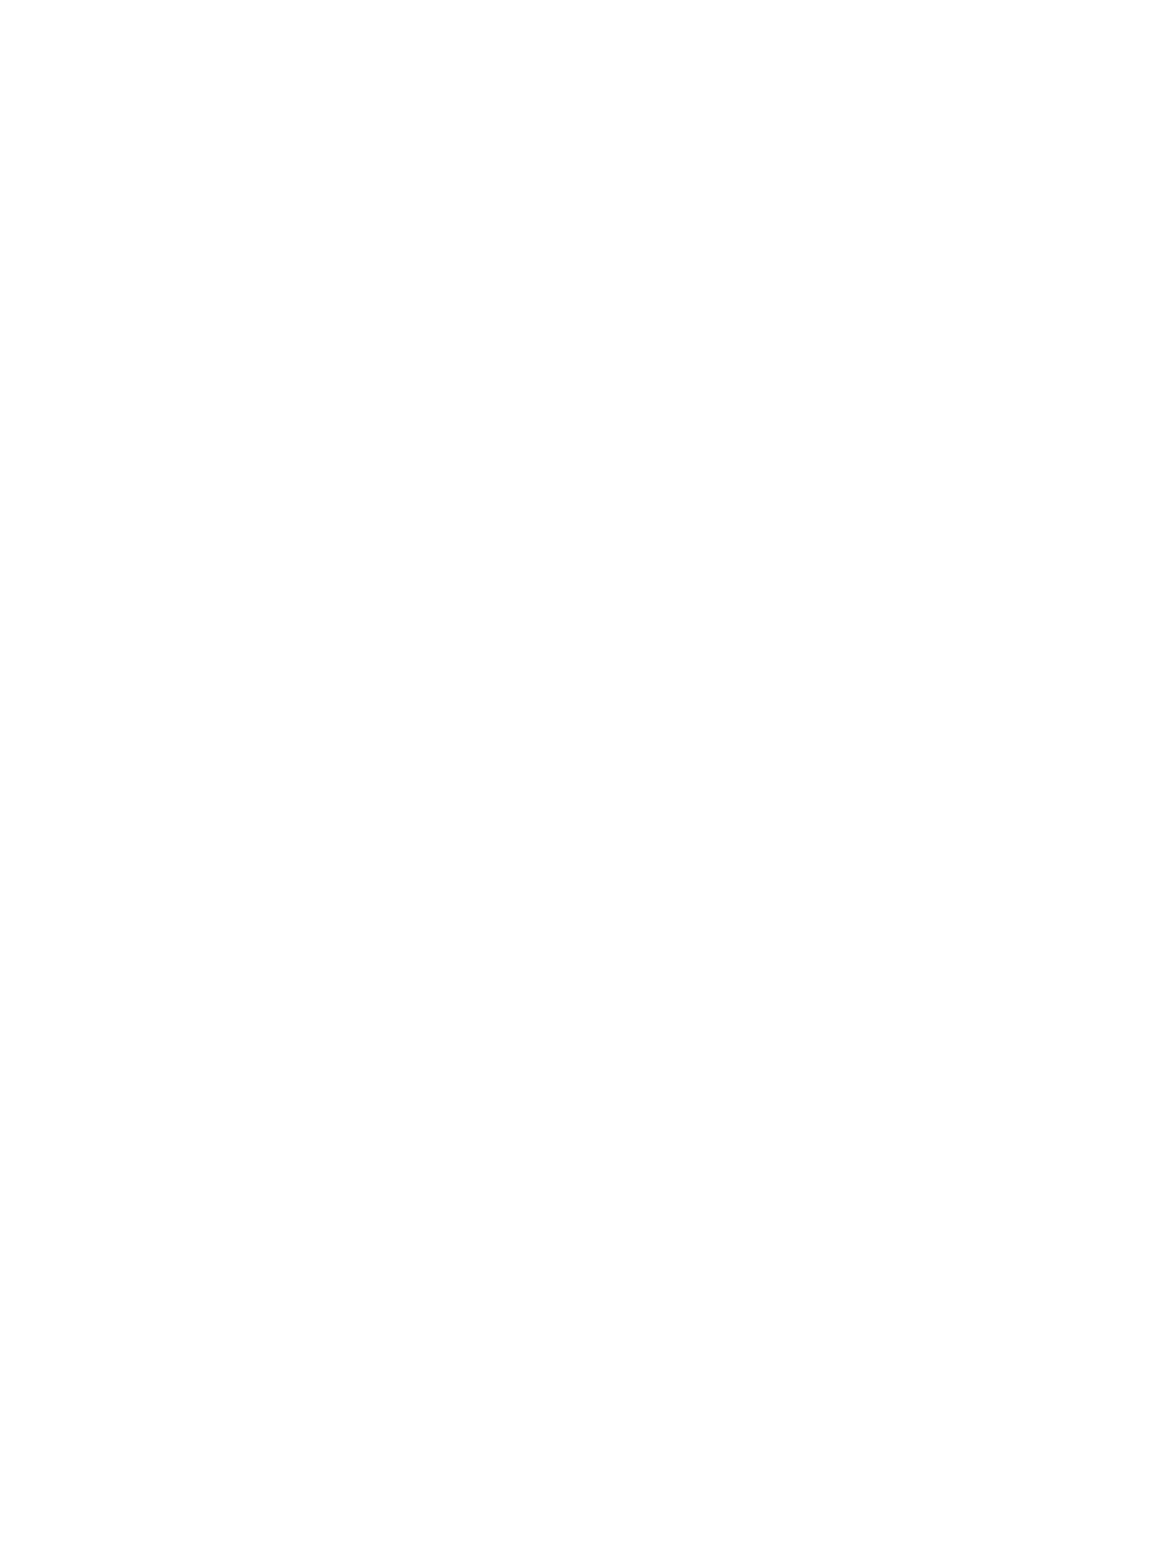 Croda International logo pour fonds sombres (PNG transparent)